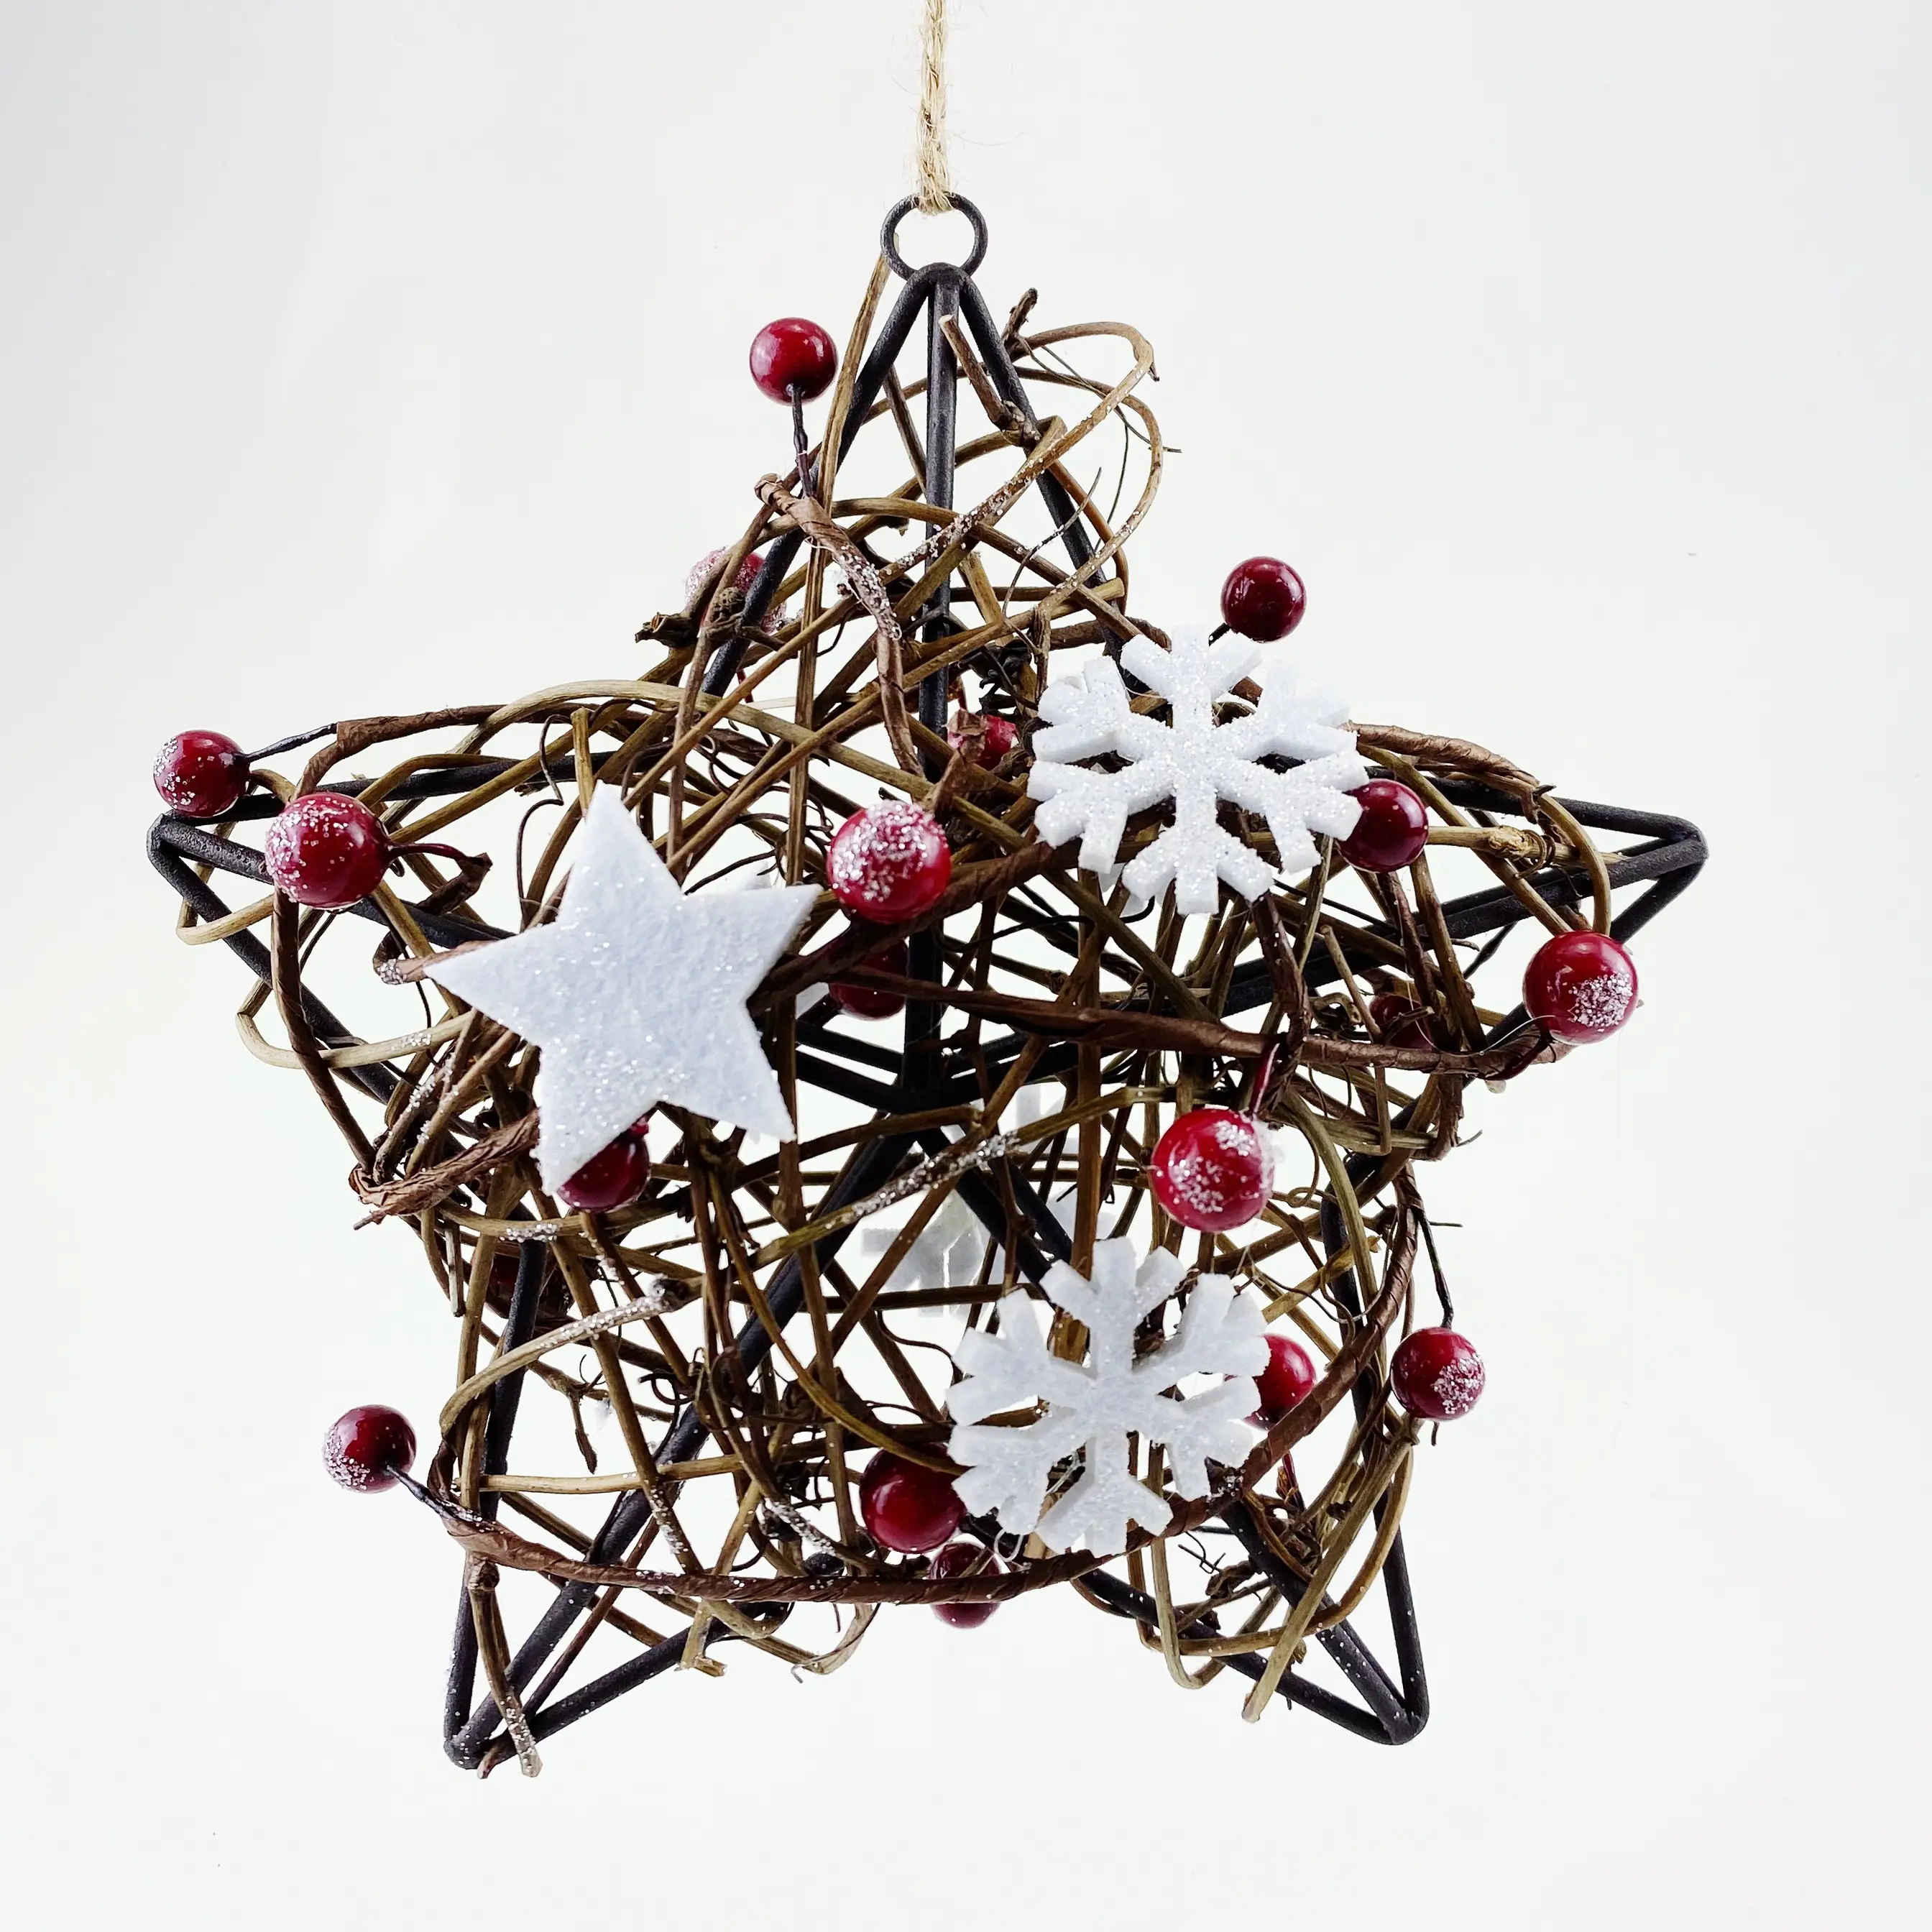 Persediaan dekorasi pesta Natal, hiasan bintang gantung pohon Natal Pentagram berkilau dalam ruangan untuk dekorasi Natal